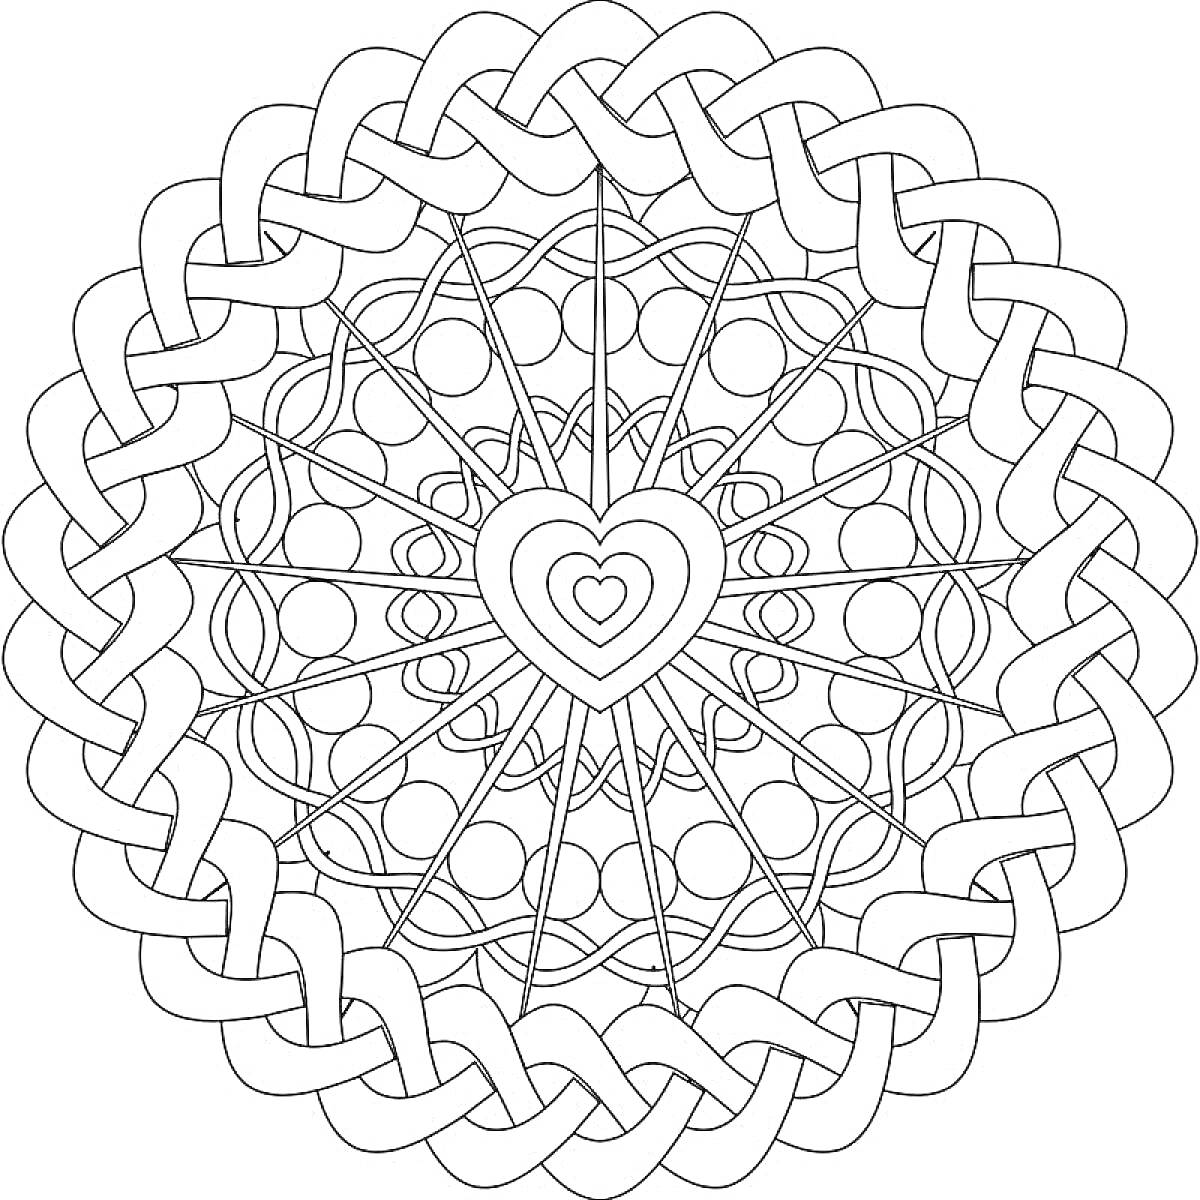 Раскраска Мандала с сердцем в центре, круглыми узорами и оплетающим узором по краю